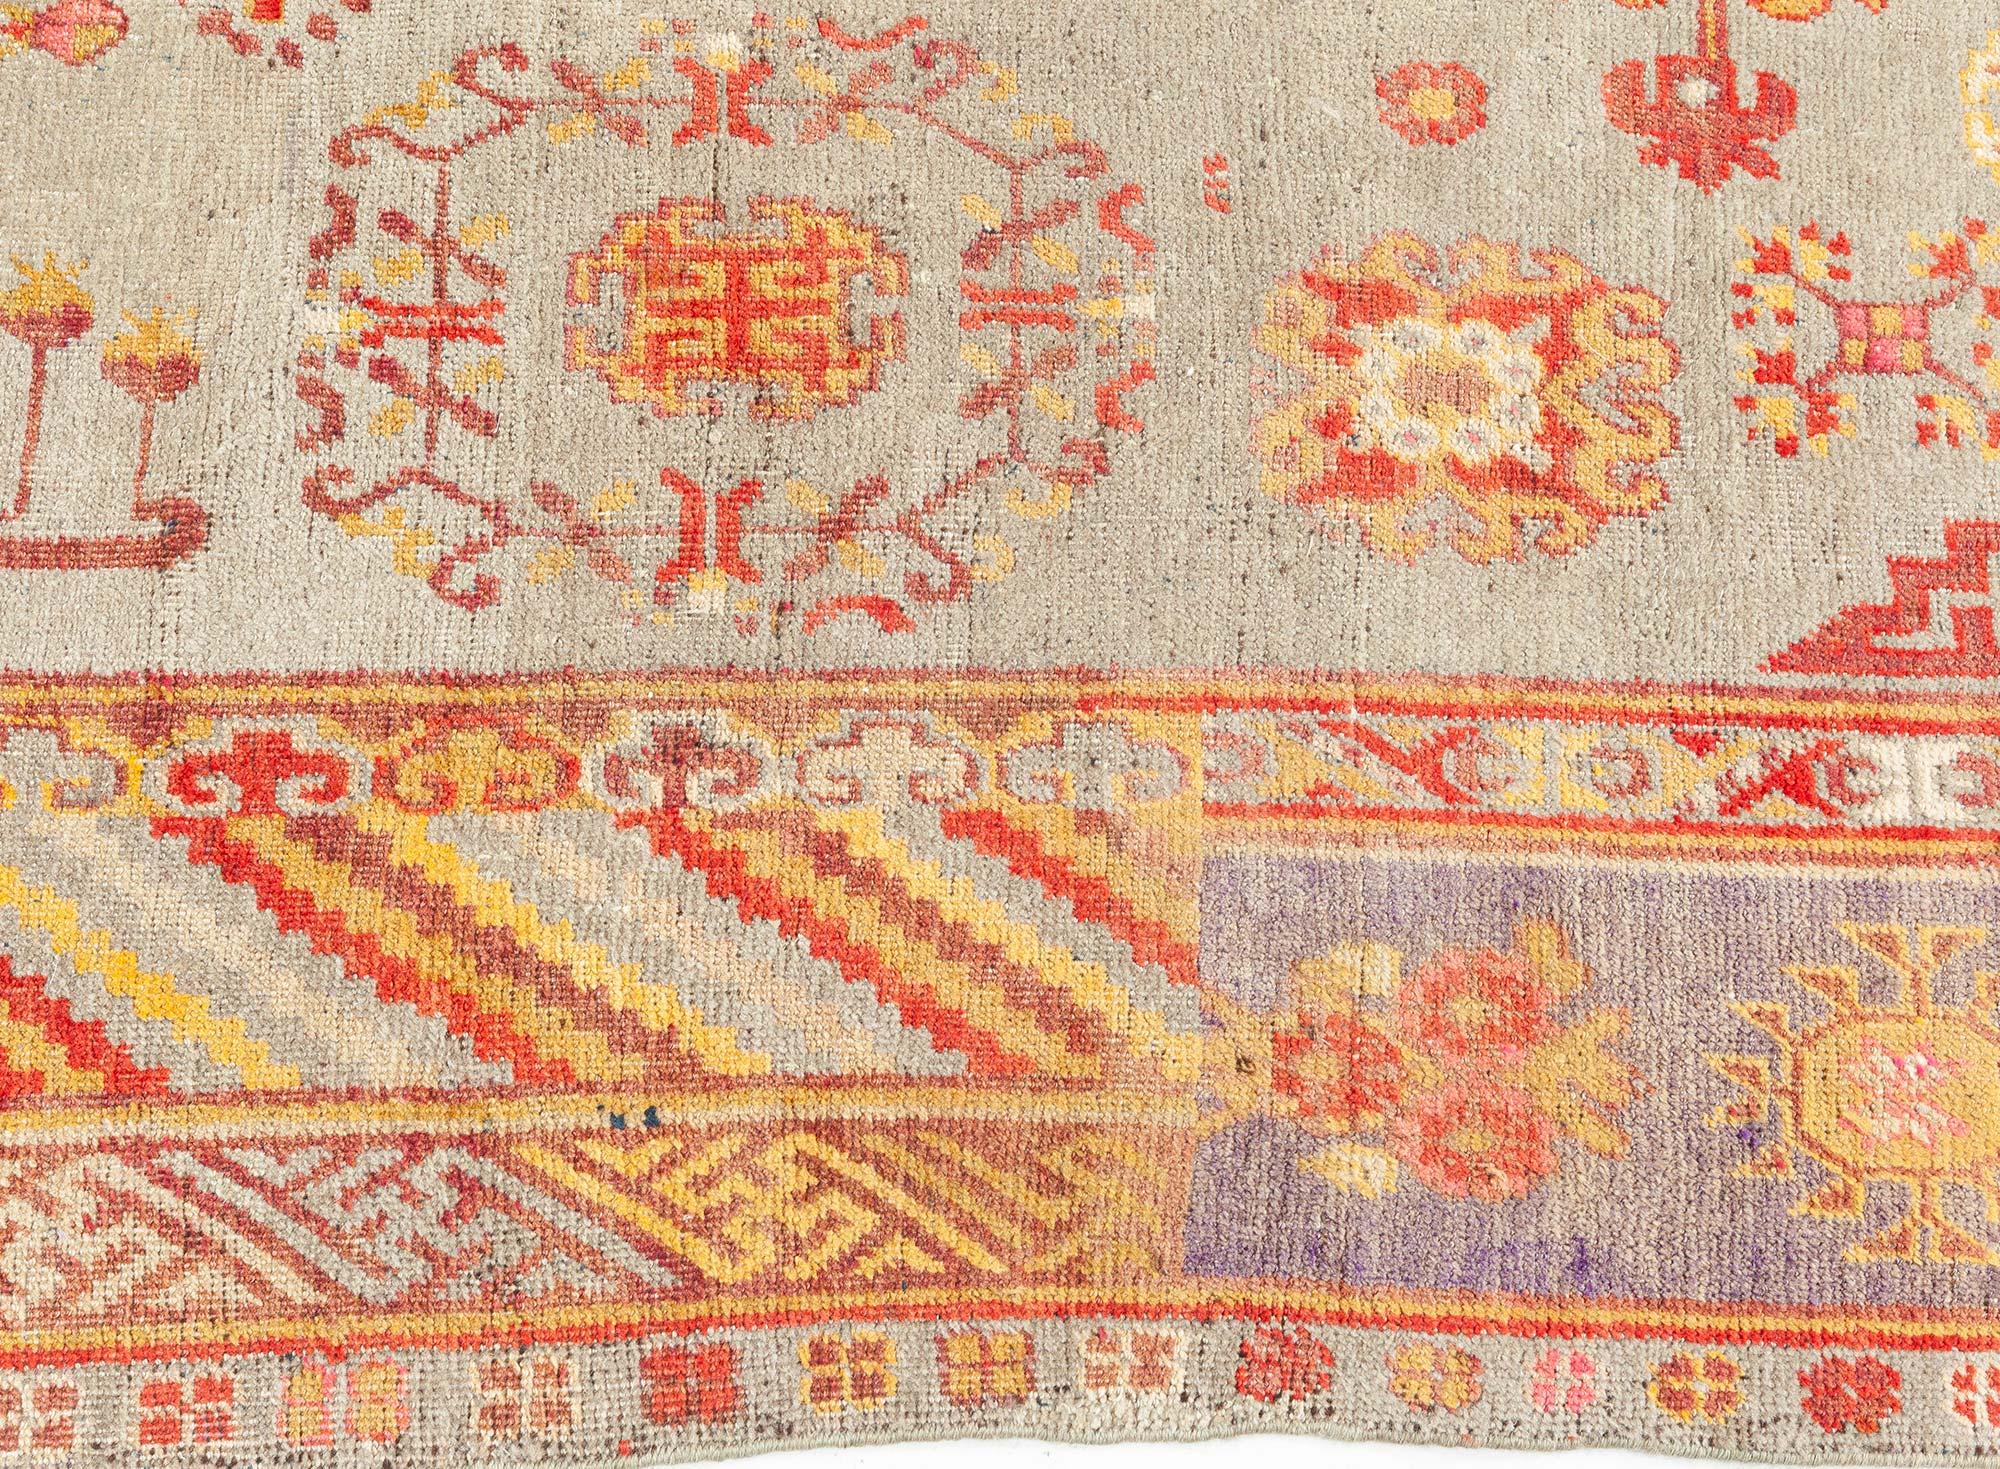 Khotan Vintage Samarkand Rug For Sale